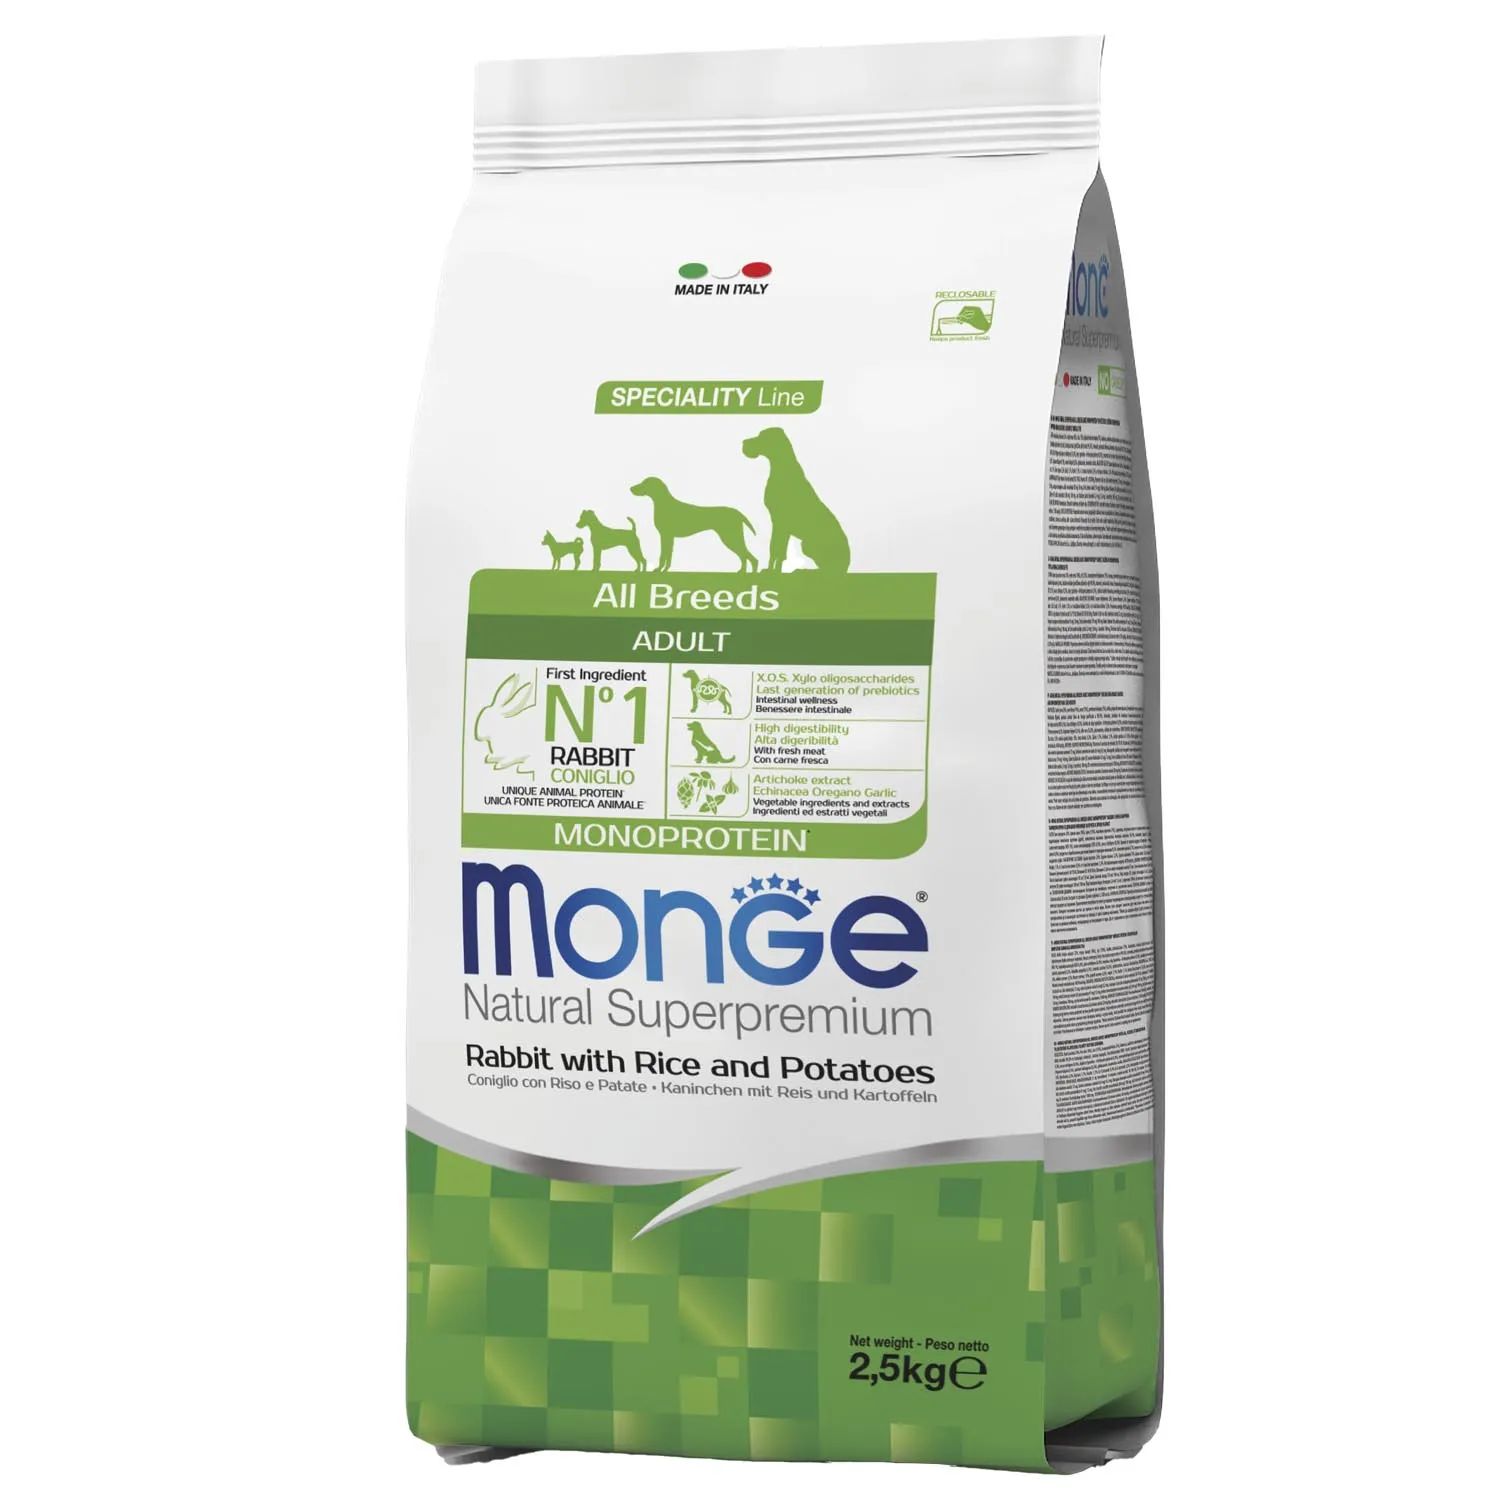 Сухой корм для собак monge speciality. Monge Dog Maxi корм для щенков крупных пород 12 кг. Monge all Breed Adult сухой корм с кроликом, рисом и картофелем для собак, 12 кг. Корм Monge natural Superpremium Adult. Корм Monge Dog 2,5 кг Speciality Monoprotein Puppy/Junior говядина/рис / 70011372.